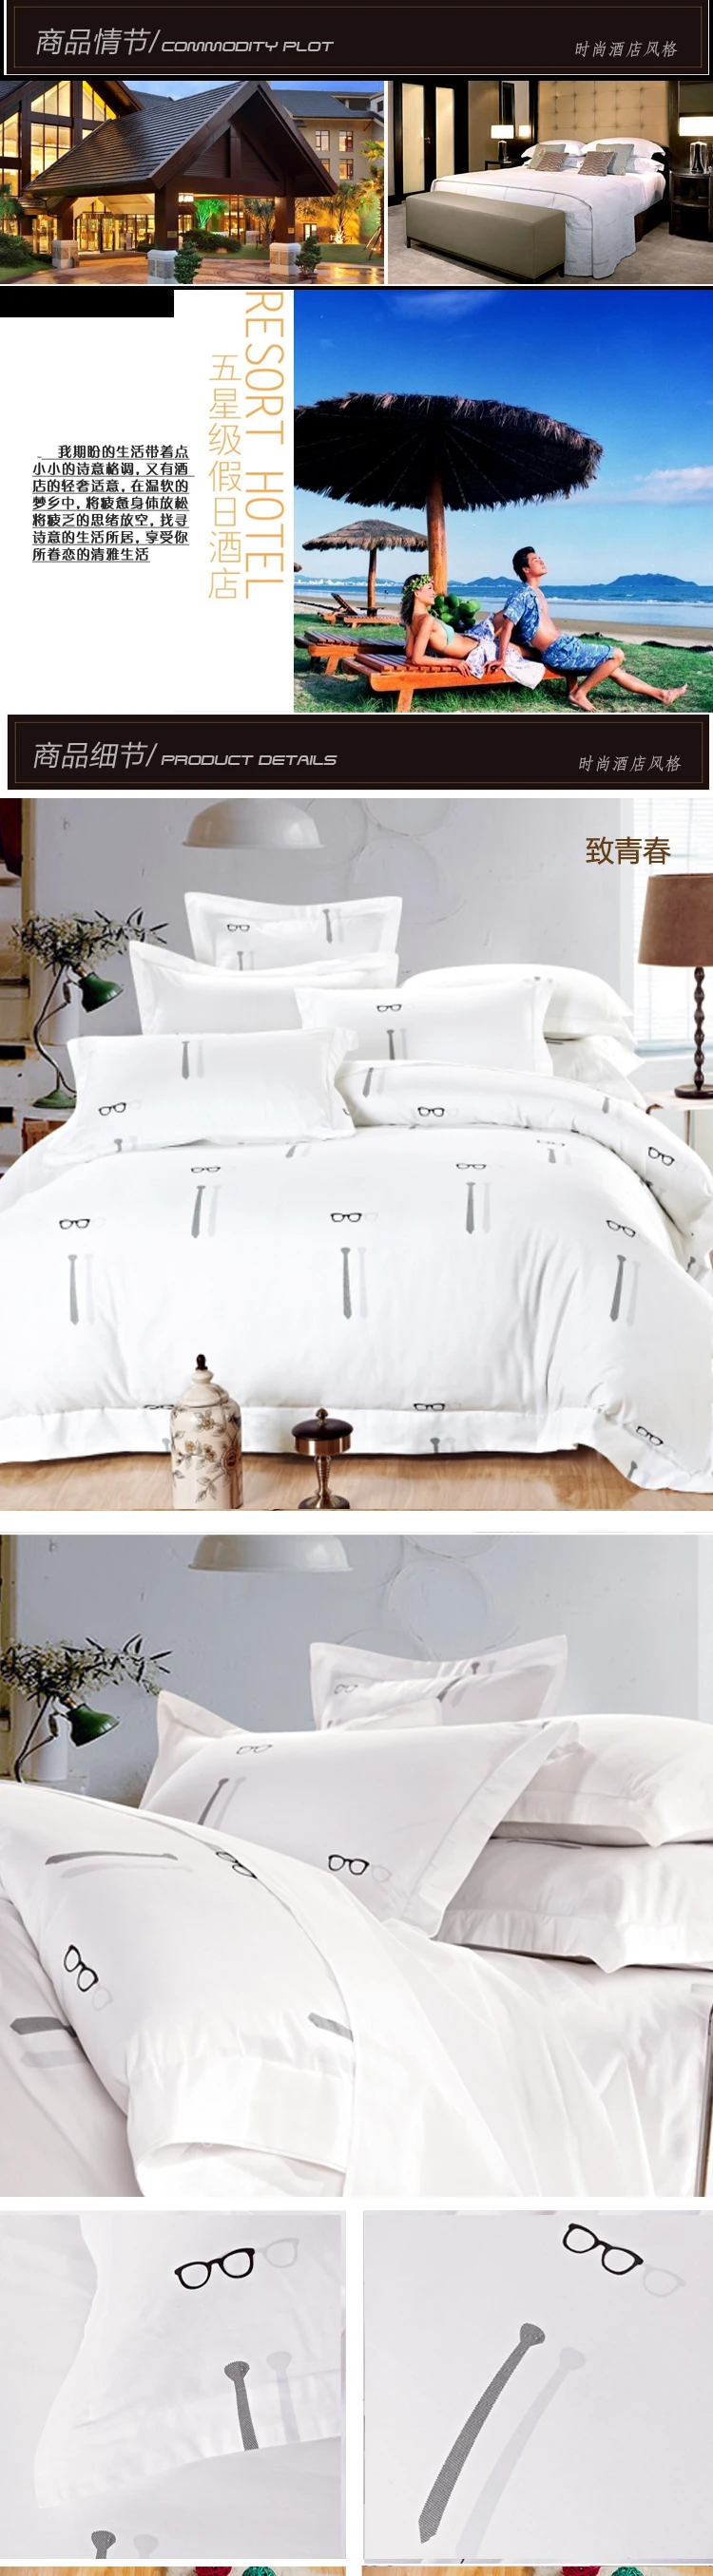 Пять звезд-отель 100% хлопок Бесплатная доставка белый пододеяльник набор постельного белья для гостиницы высокое качество 4 шт. постельные